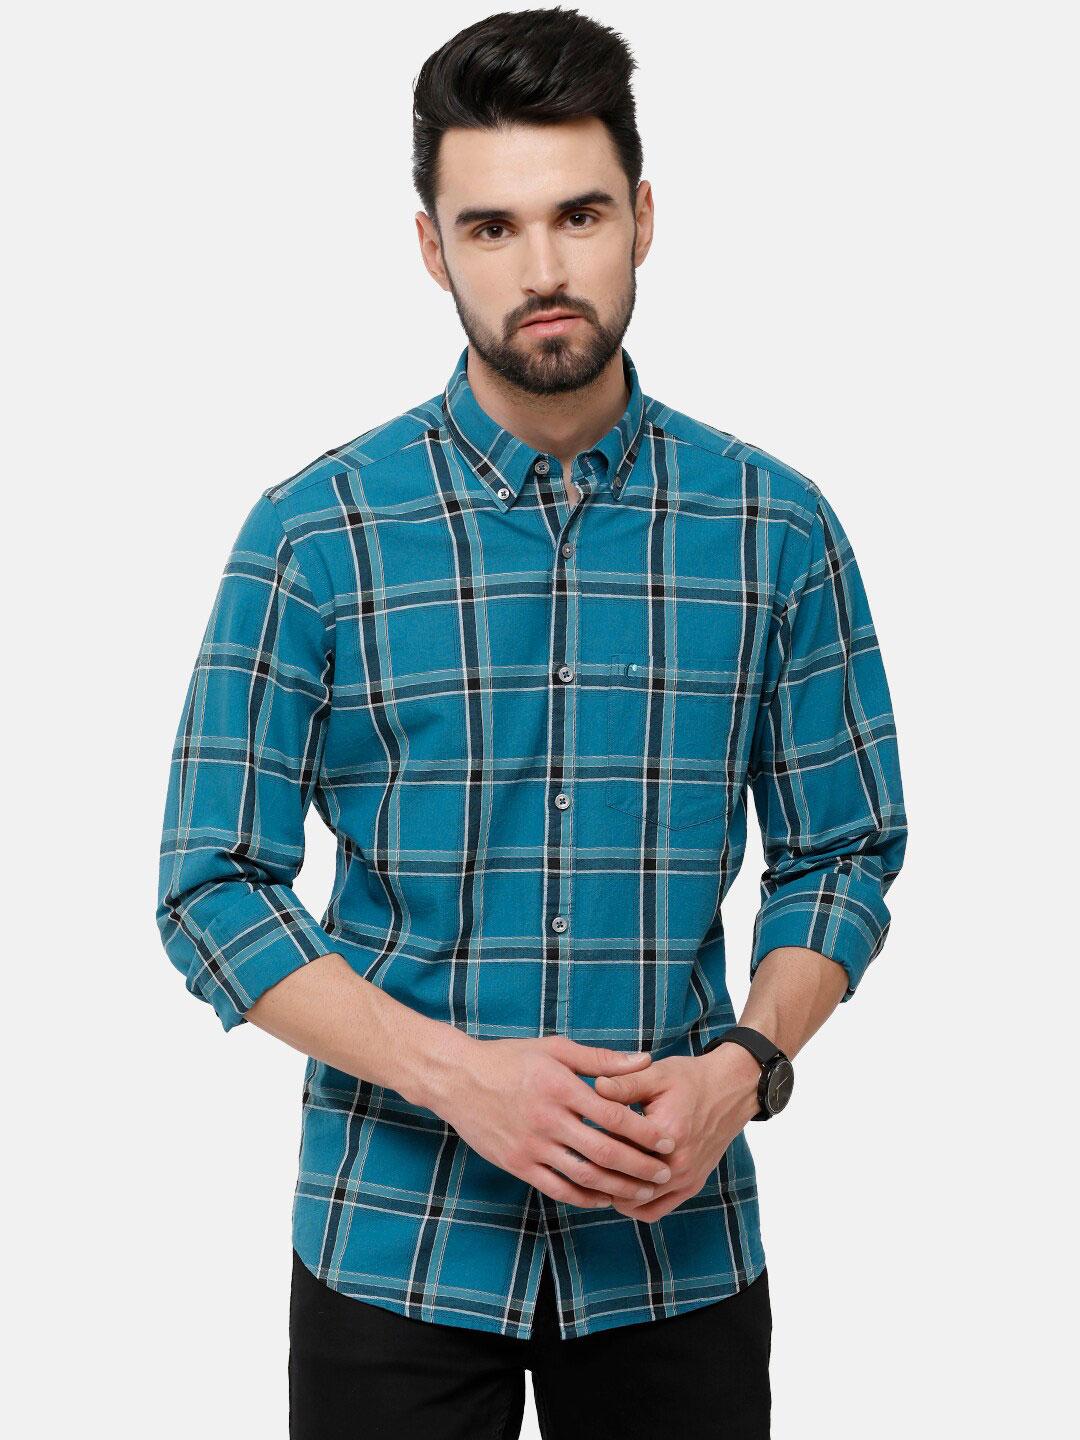 cavallo-by-linen-club-men-blue-tartan-checked-cotton-linen-casual-shirt